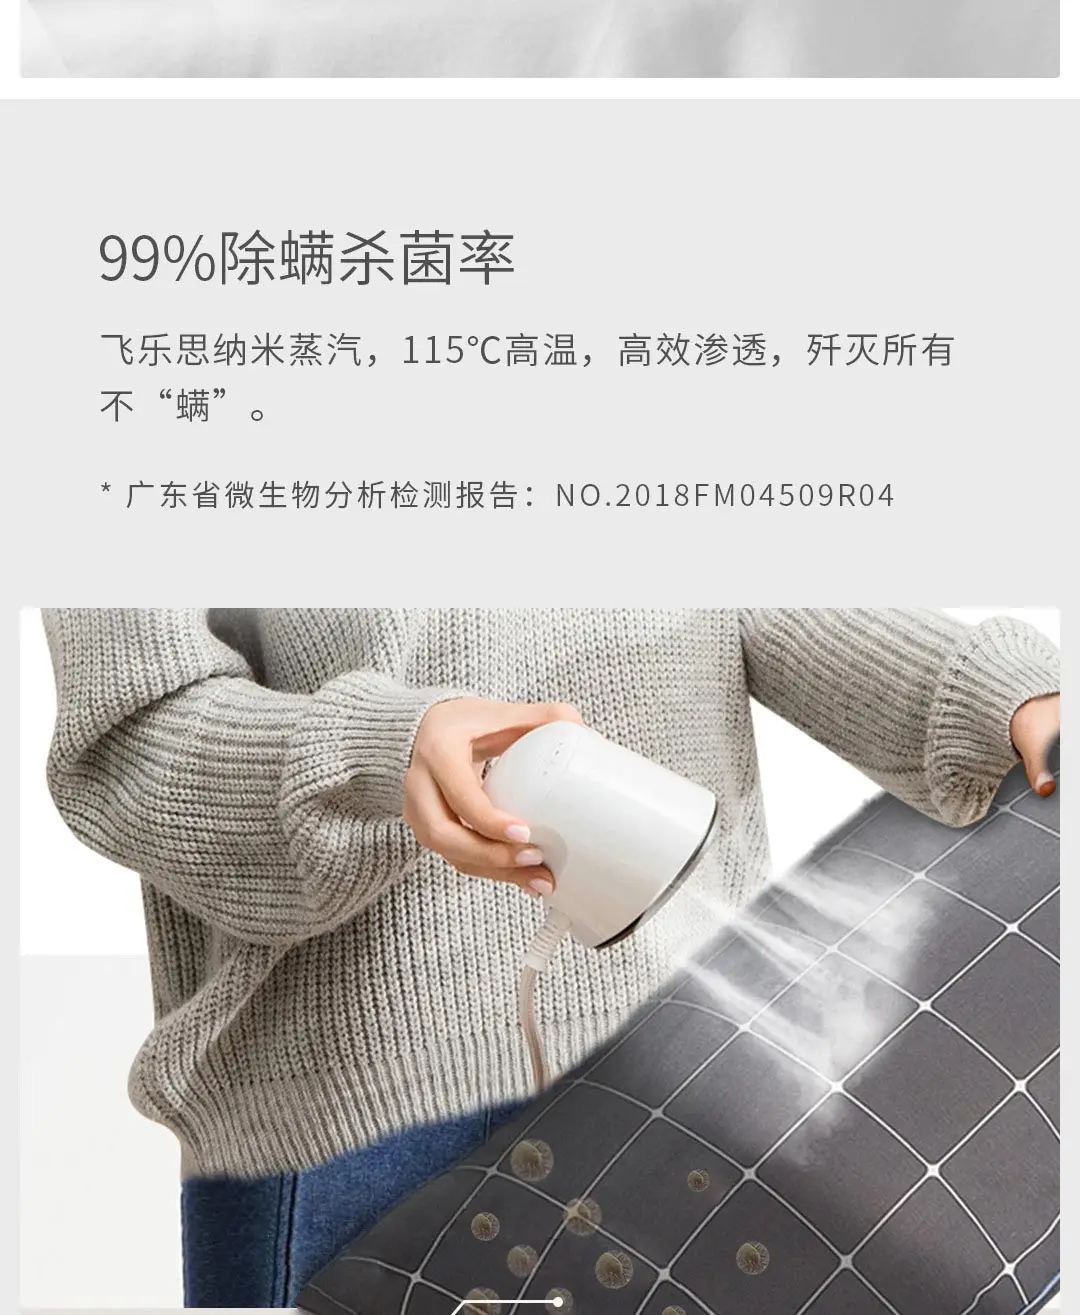 Xiaomi нано-пар профессиональный Утюг профессиональный утюг нано-Паровая Глажка одежды для сухой и влажной уборки, хит, 4-регулировка скорости